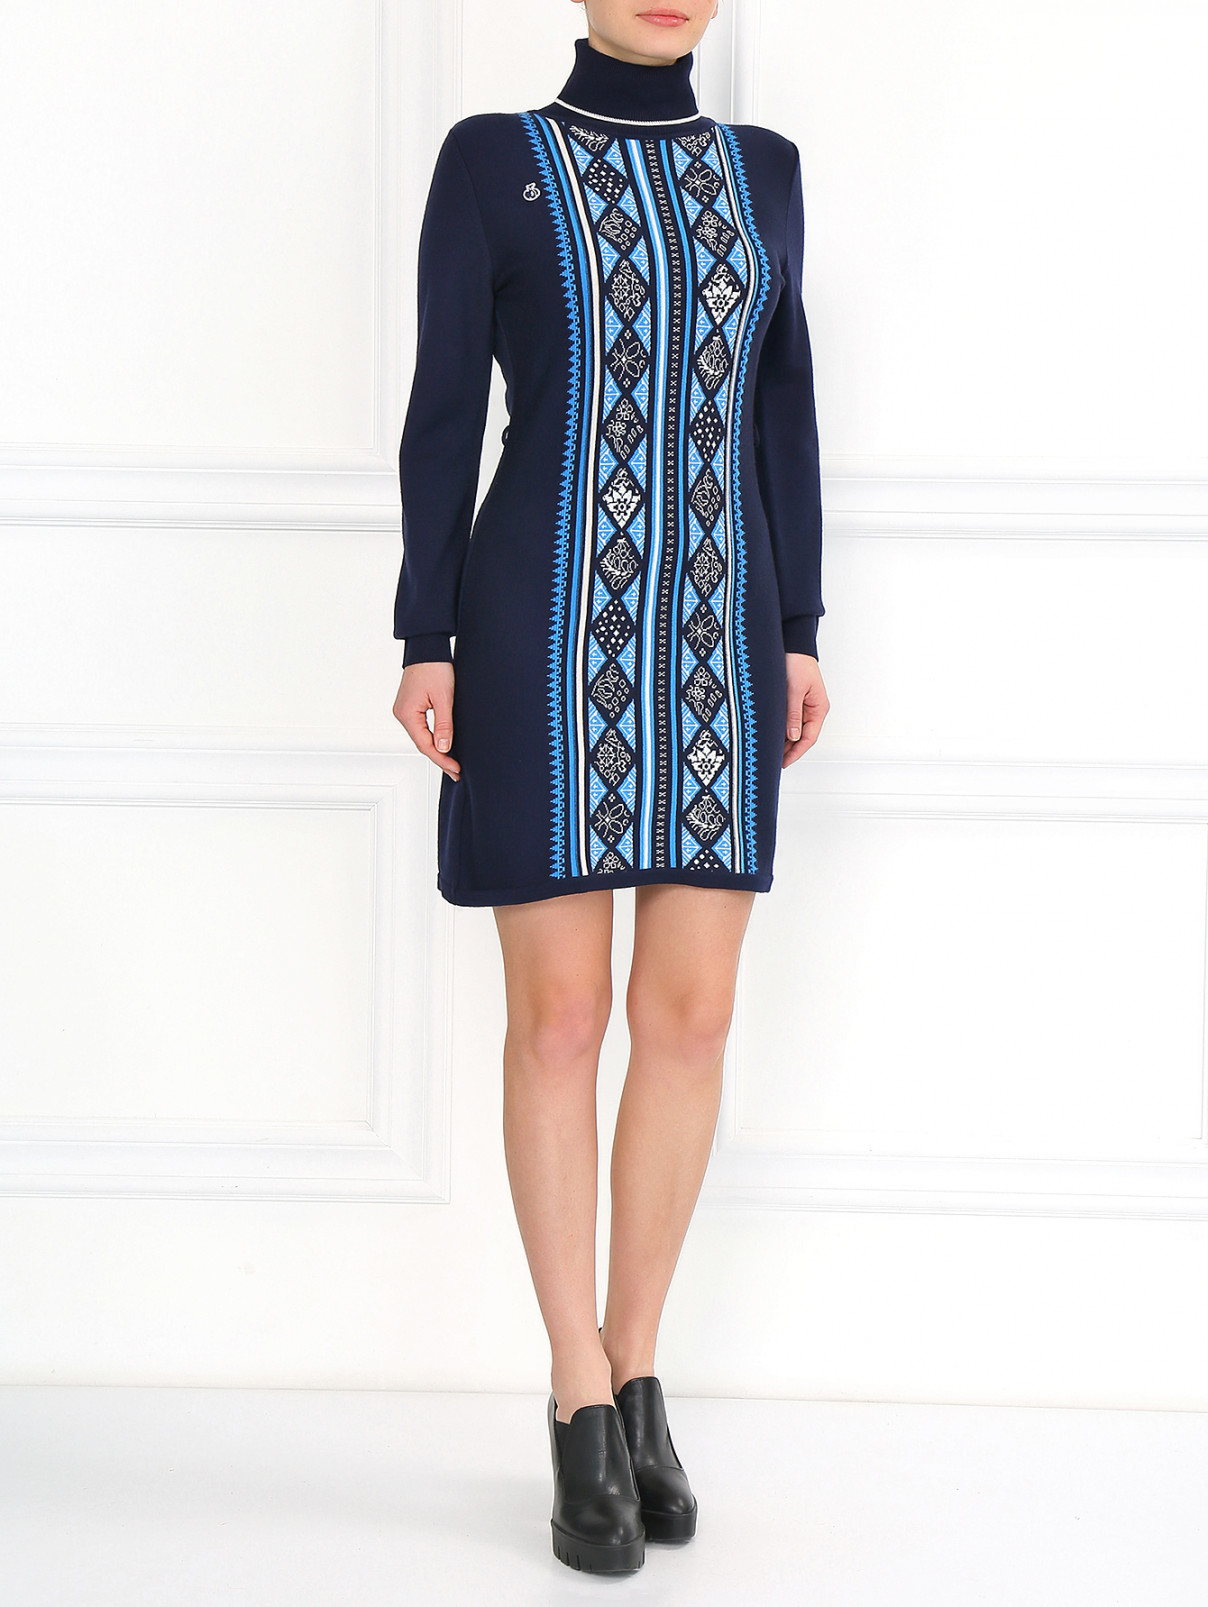 Трикотажное платье с высоким горлом Sochi 2014  –  Модель Общий вид  – Цвет:  Синий